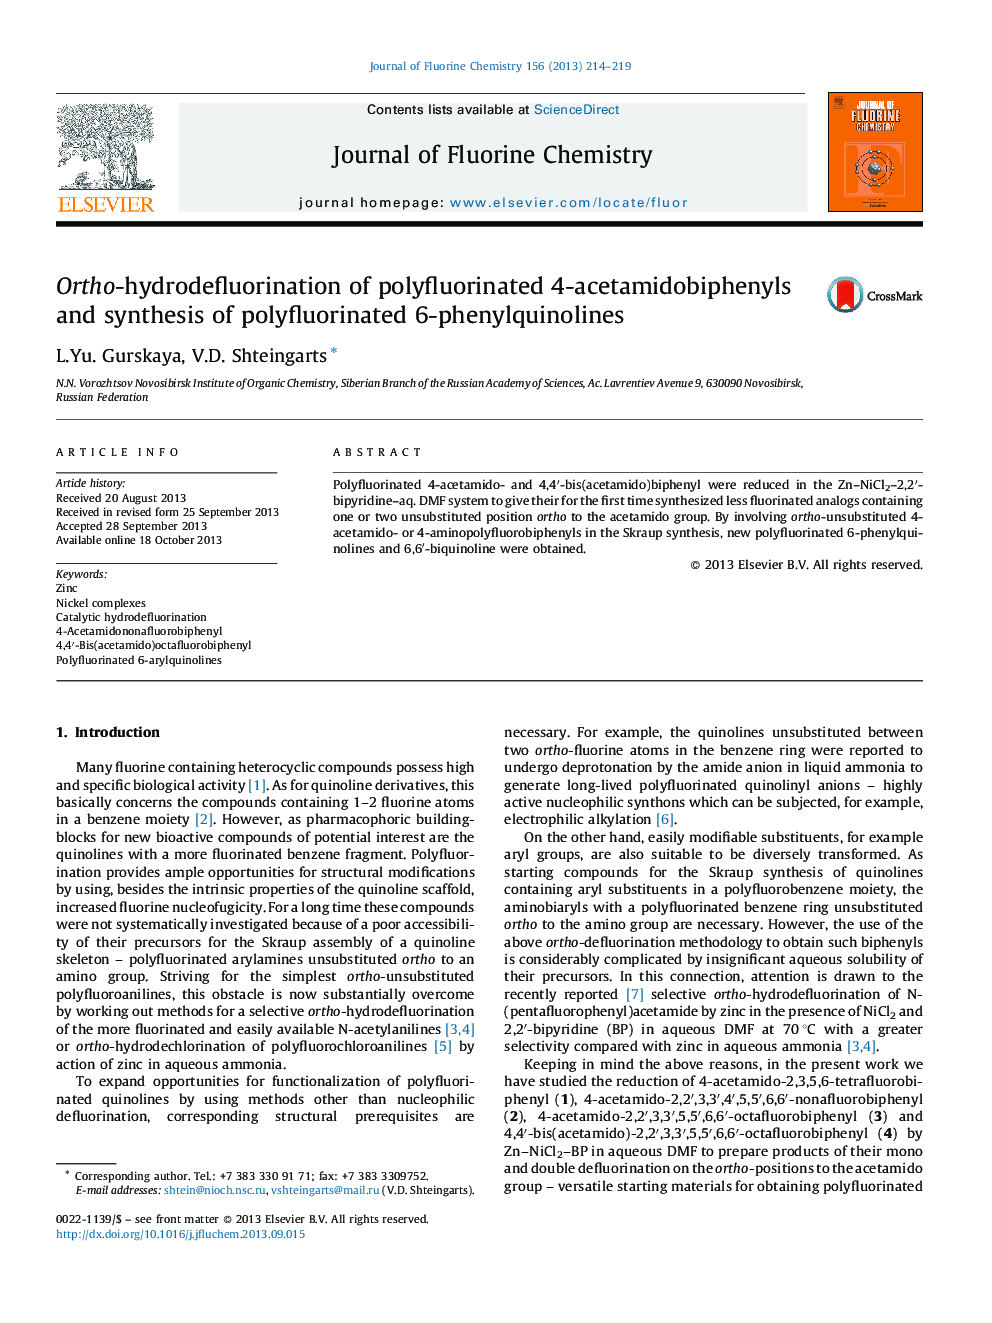 Ortho-hydrodefluorination of polyfluorinated 4-acetamidobiphenyls and synthesis of polyfluorinated 6-phenylquinolines